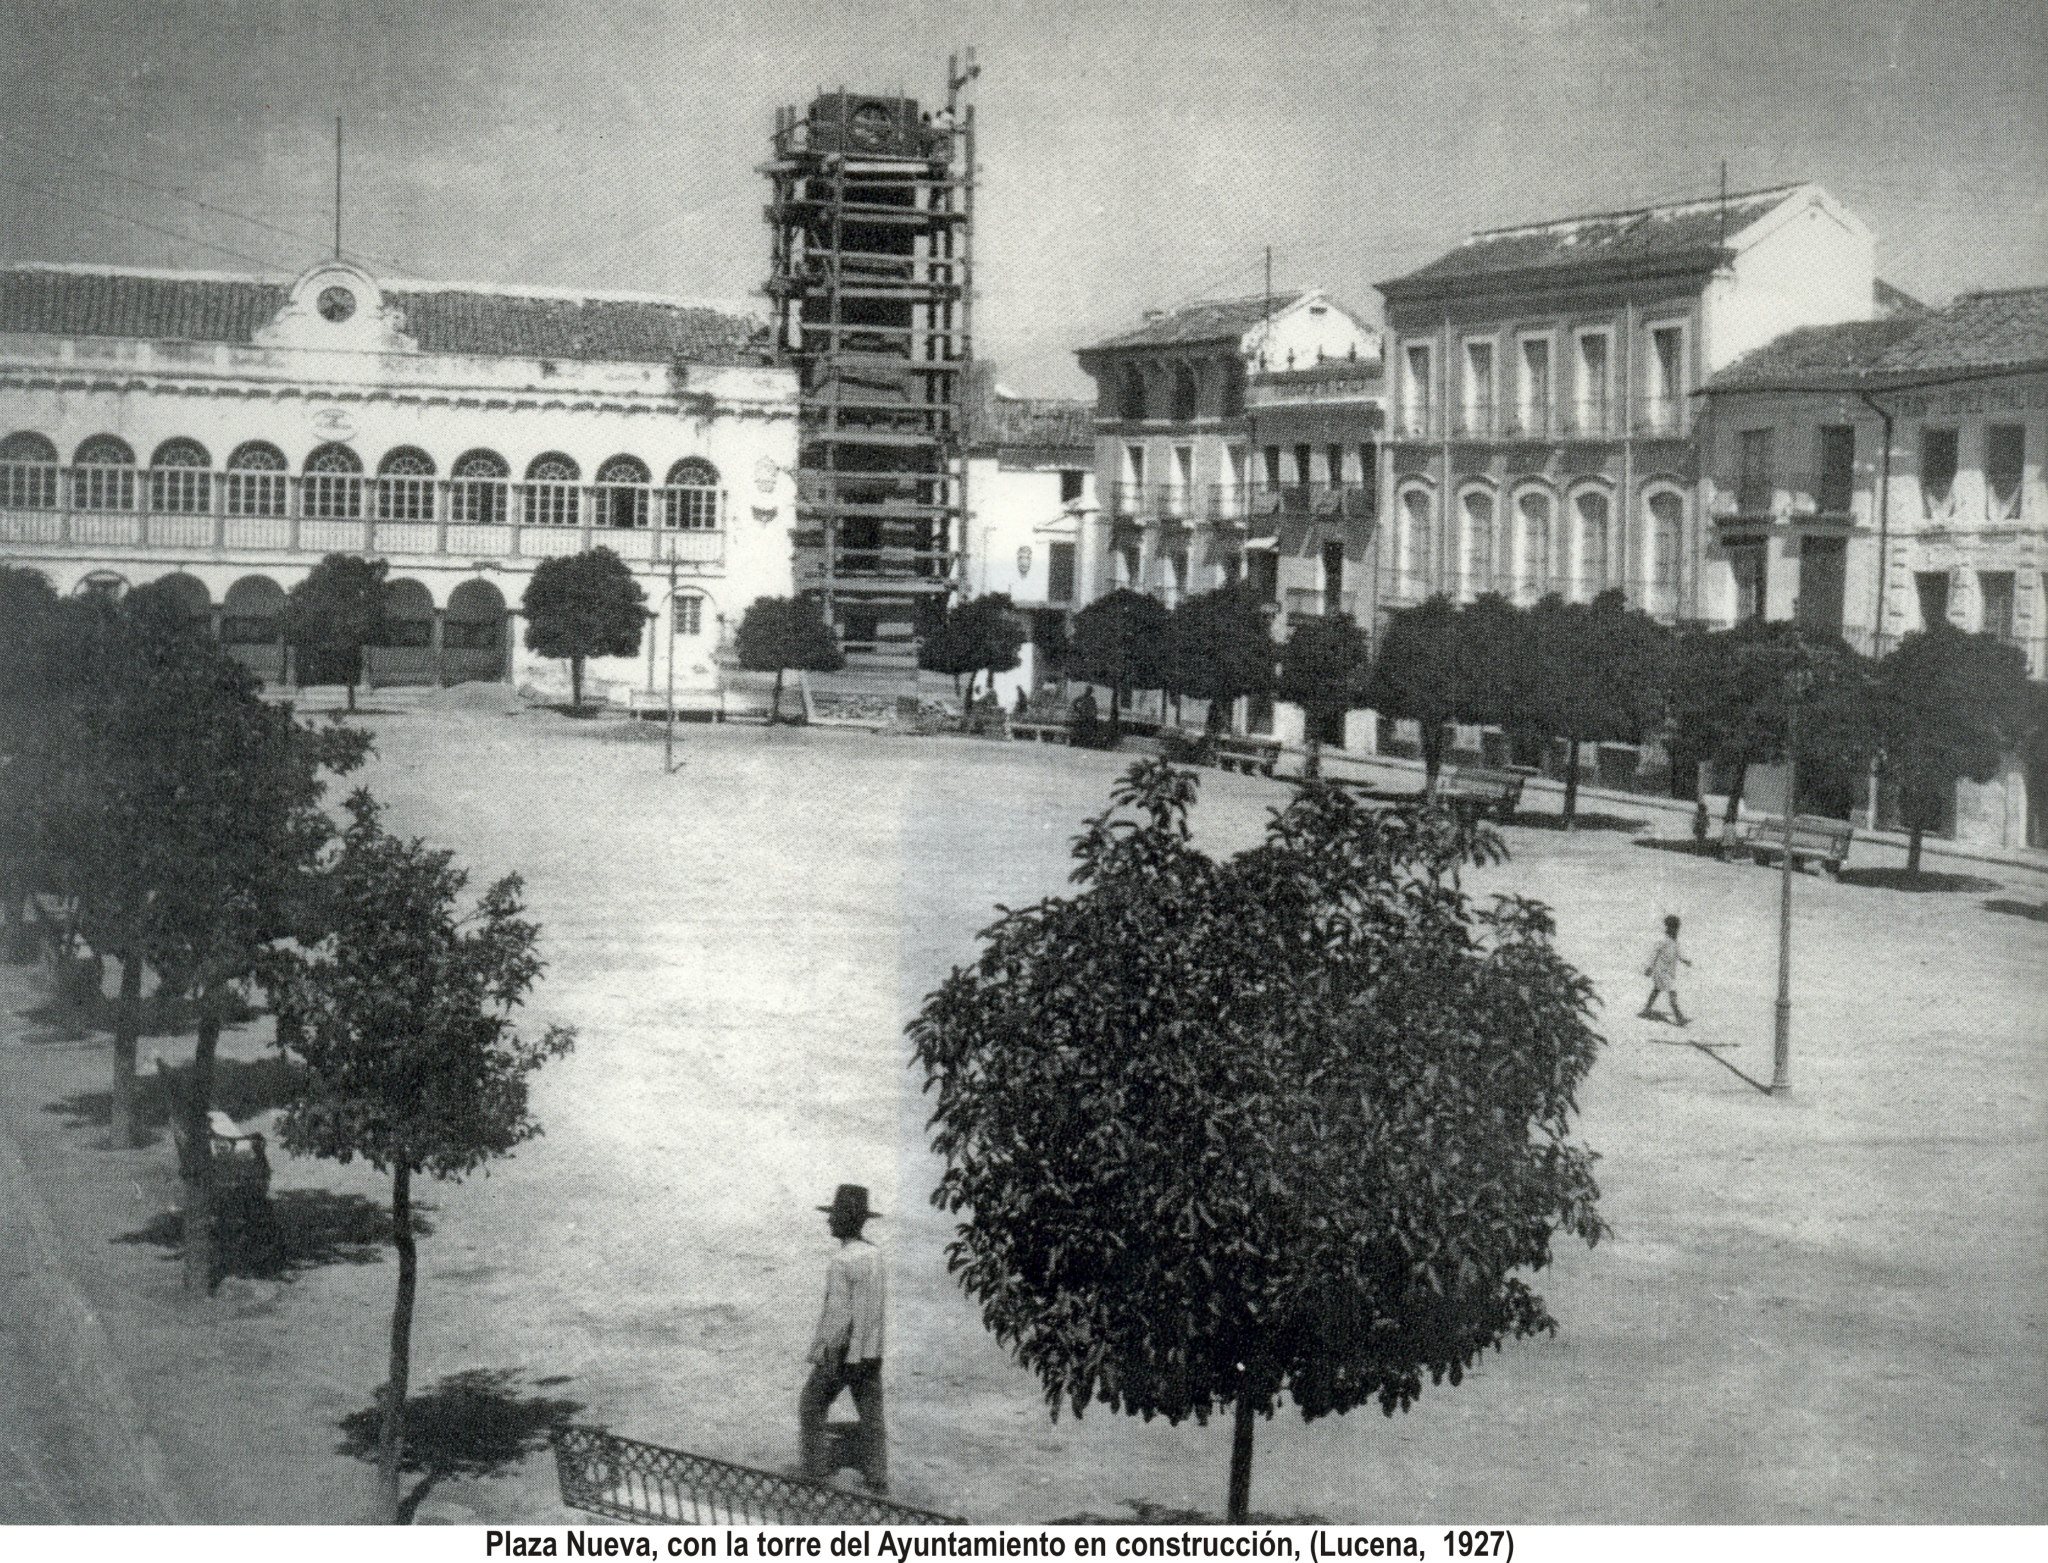 Plaza Nueva, Torre del Ayuntamiento en construcción. 1927